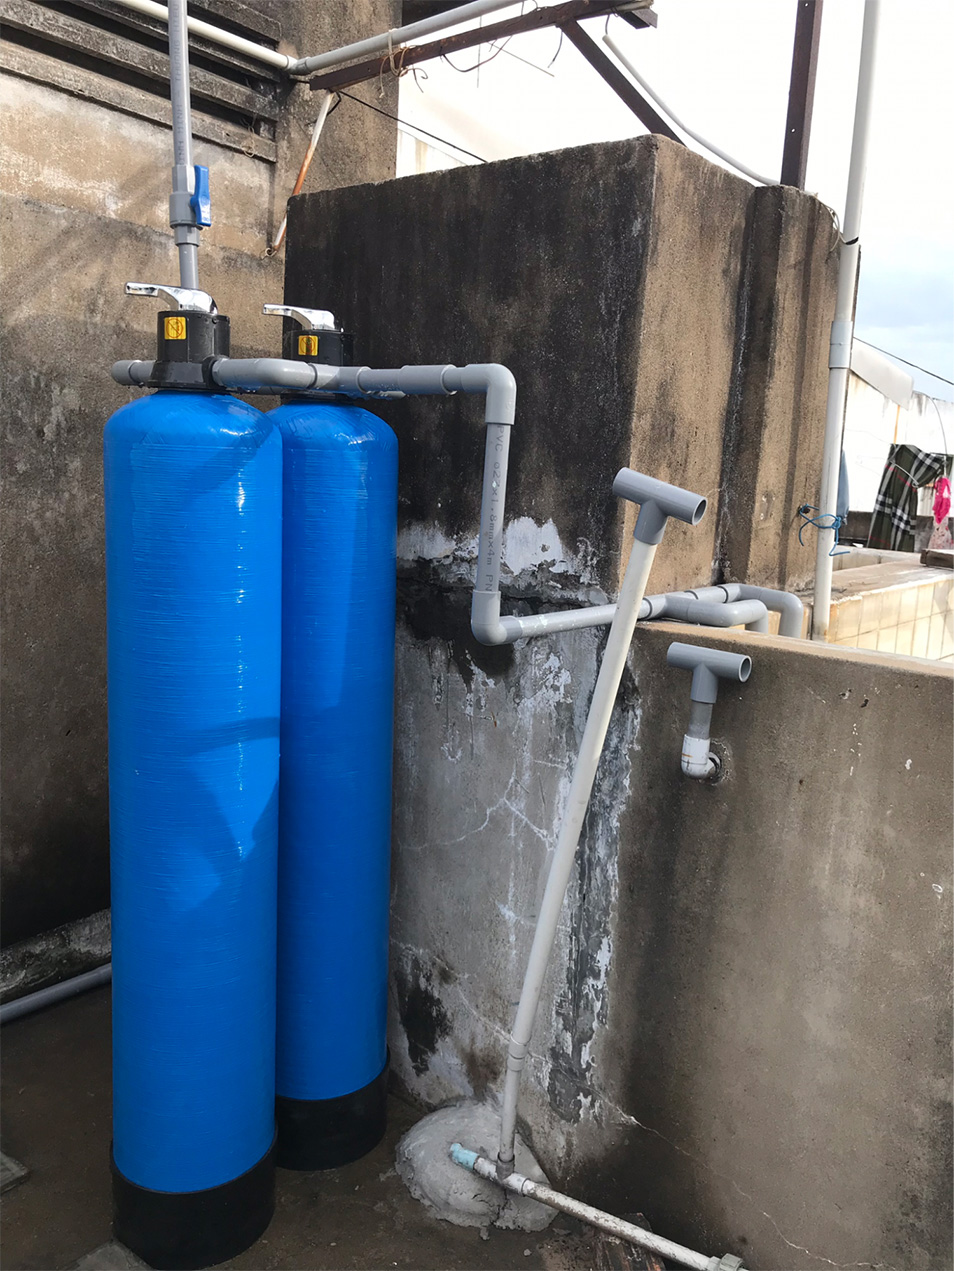 Bộ lọc nước phèn được sử dụng rộng rãi ở nhiều địa phương